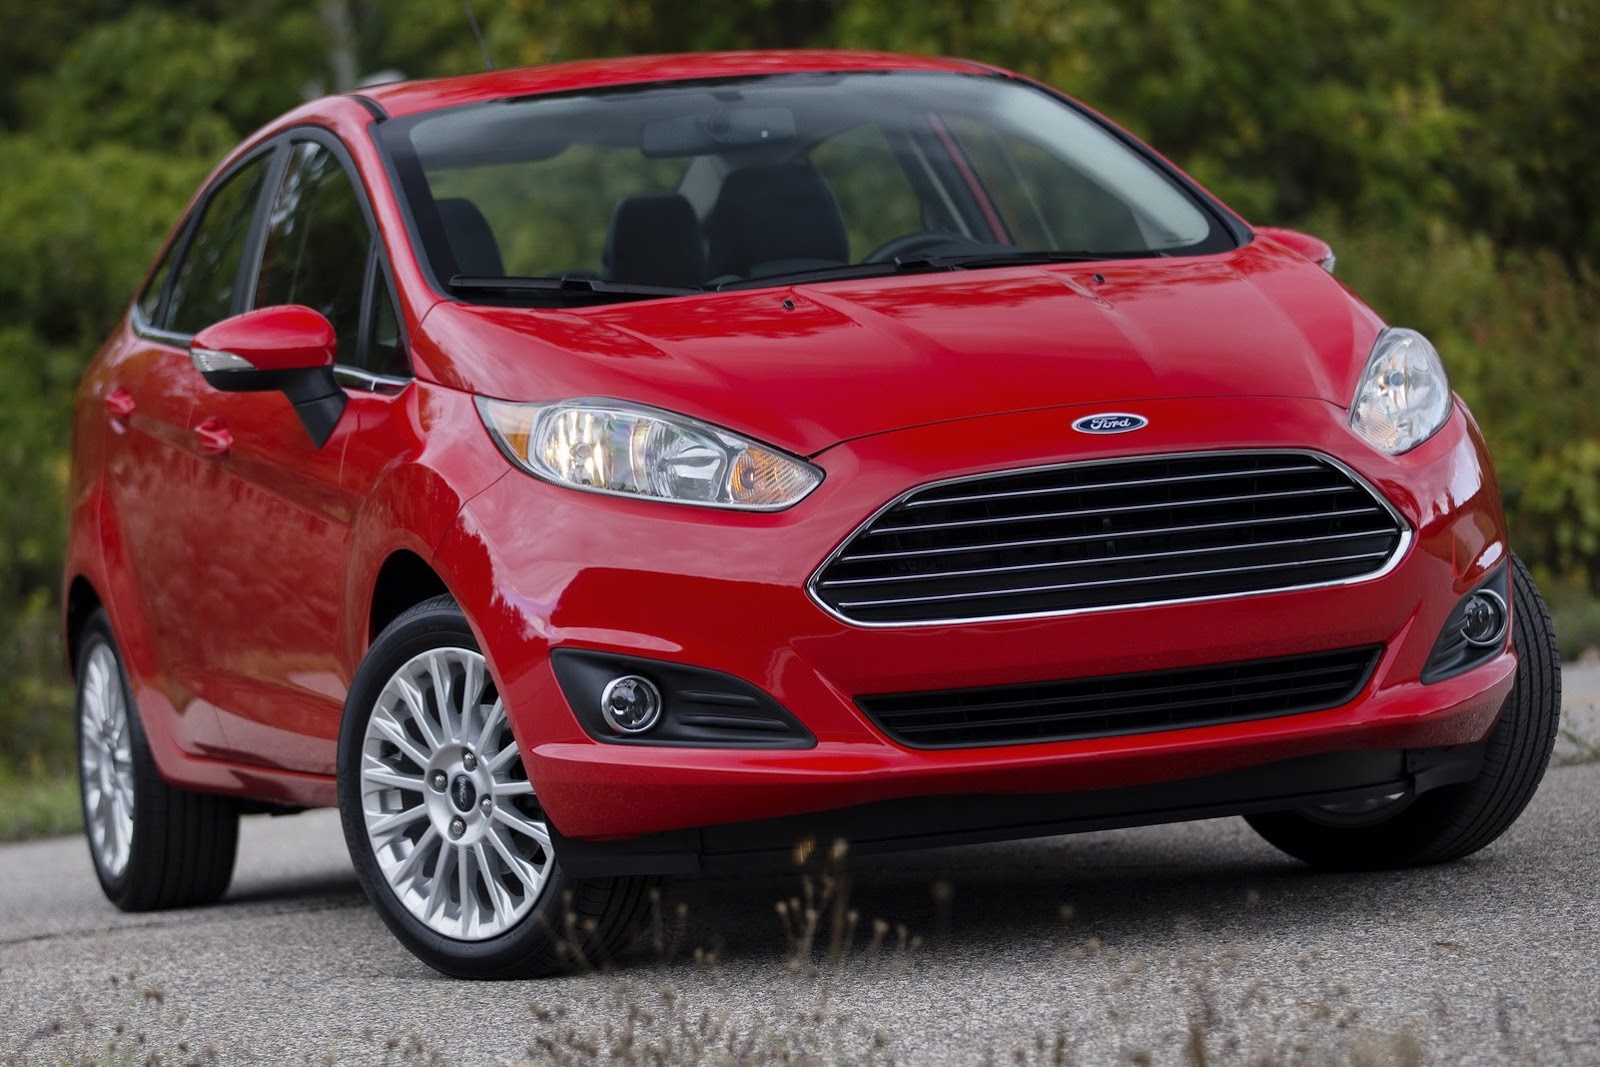 Khi so sánh xe ô tô dòng mini, Ford Fiesta gây ấn tượng bởi phong cách thiết kế gọn gàng, thông minh